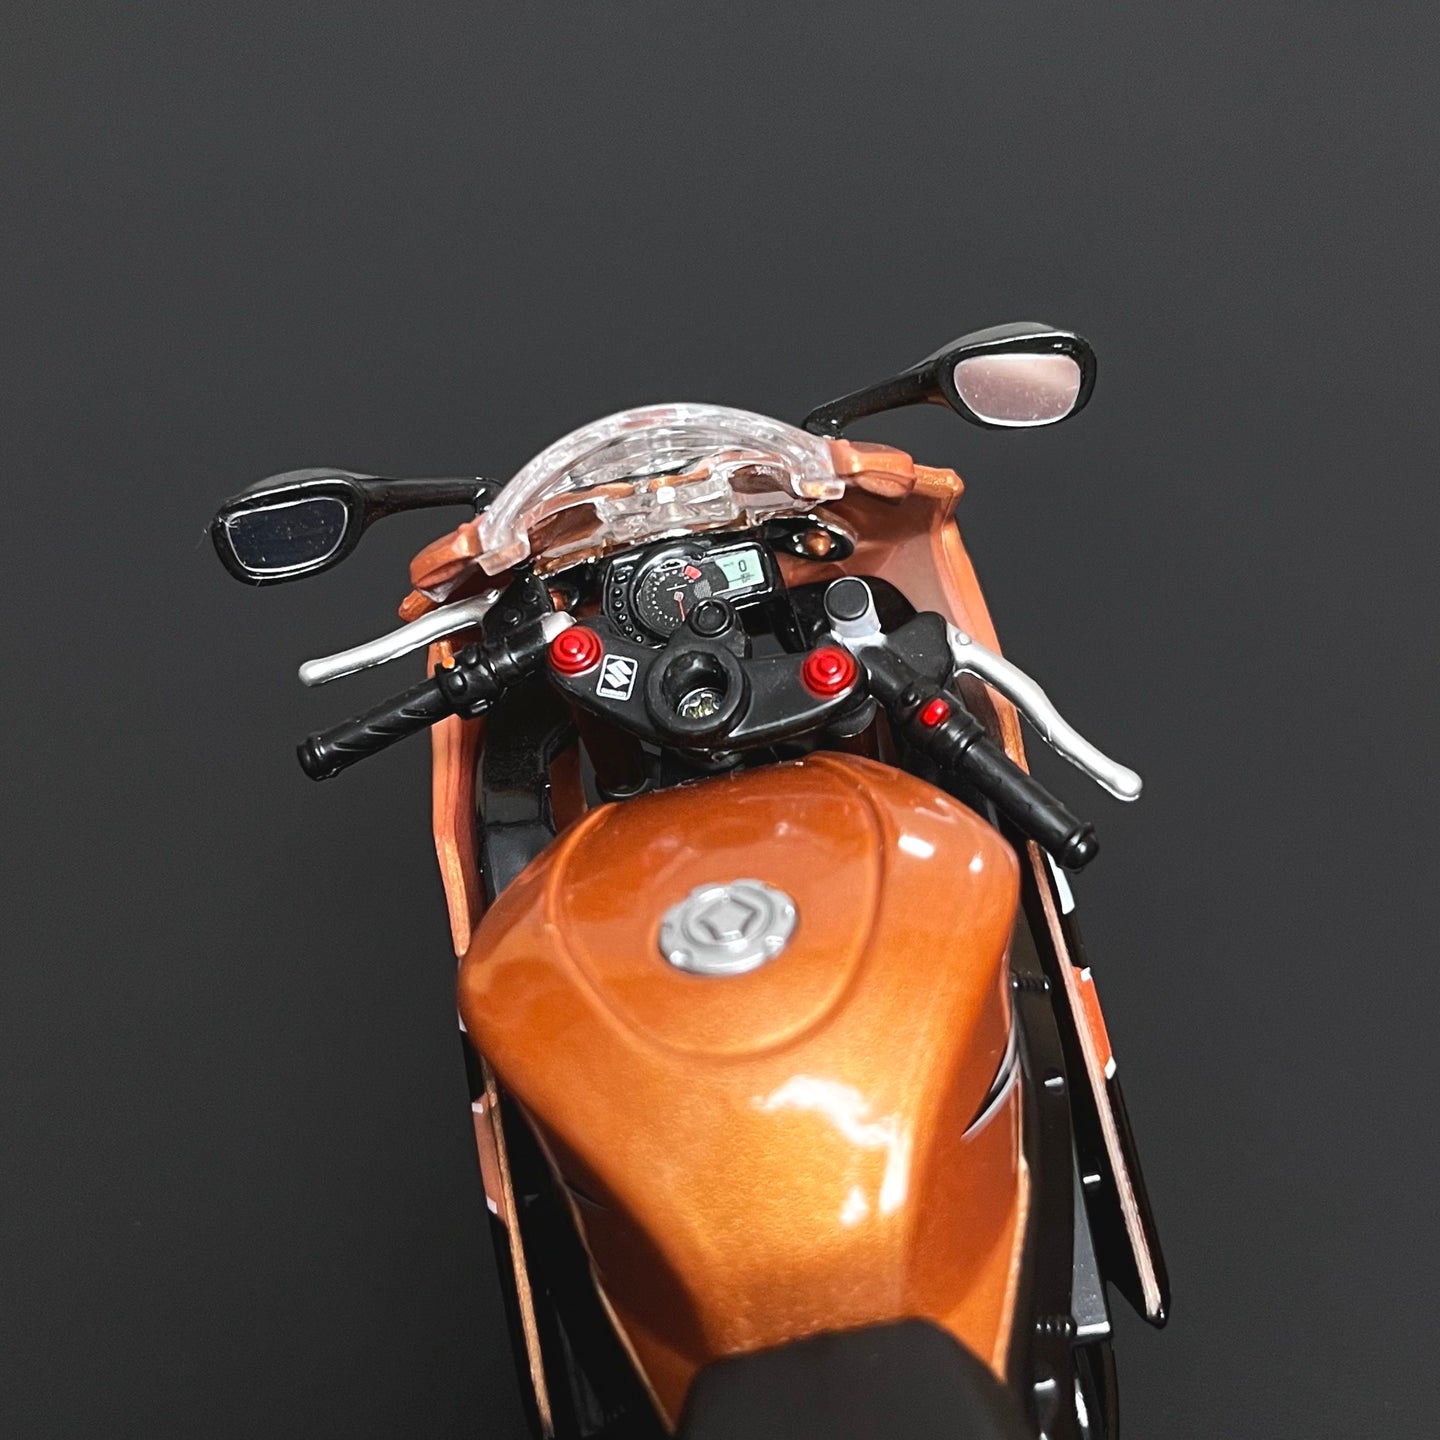 Suzuki GSX-R1000 Diecast Bike 1:12 Motorcycle Model By Maisto